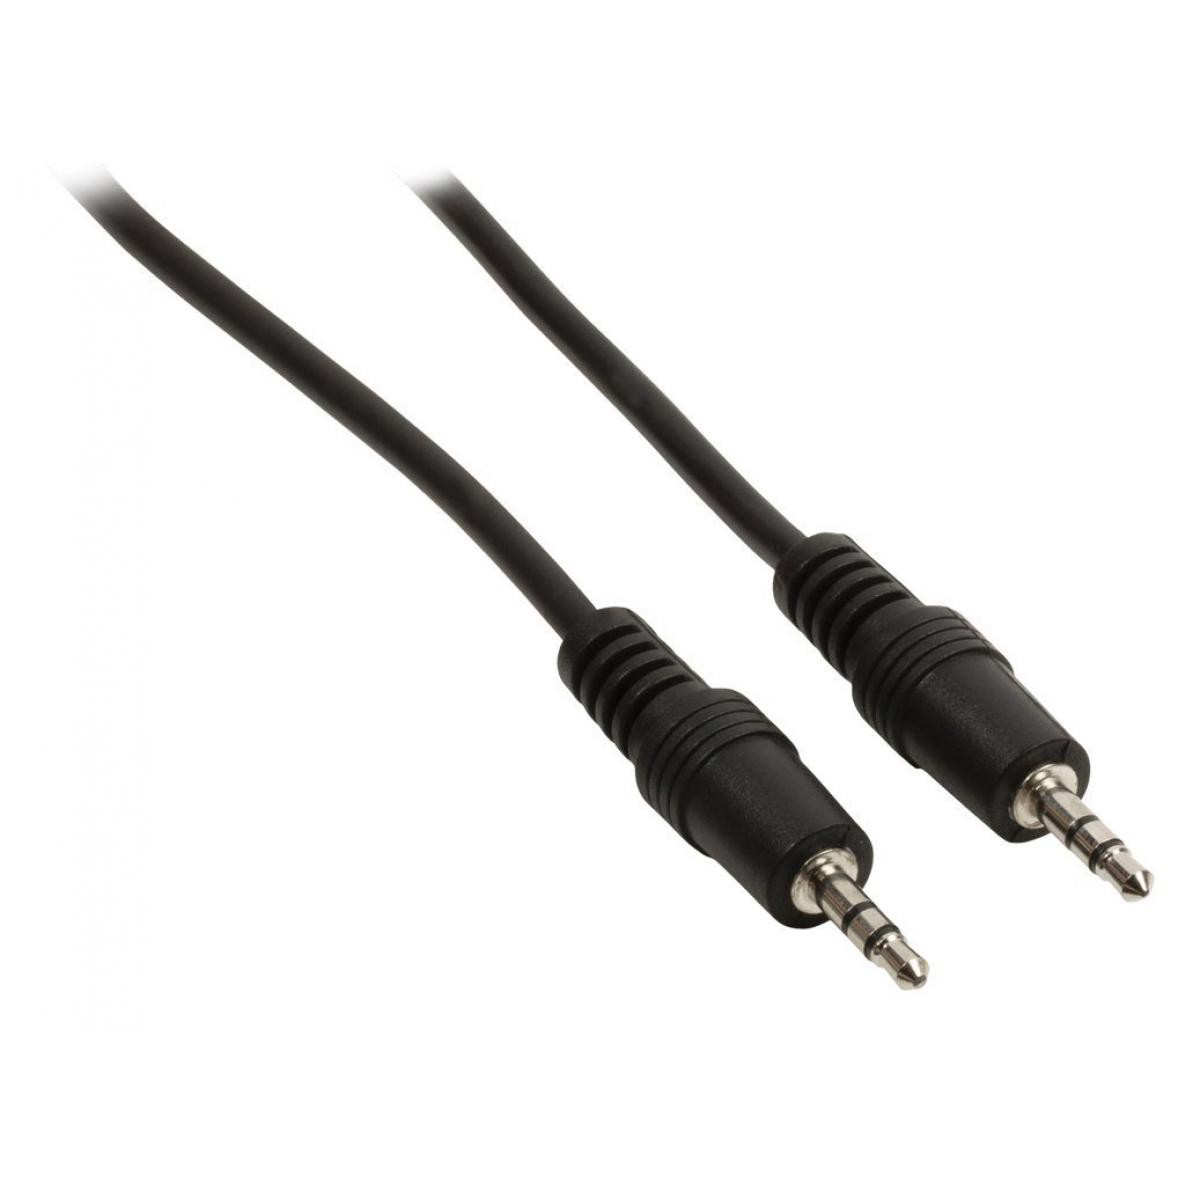 Ansell - Câble audio Jack 3,5 mm stéréo mâle vers Jack 3,5 mm mâle 3 m noir - accessoires cables meubles supports